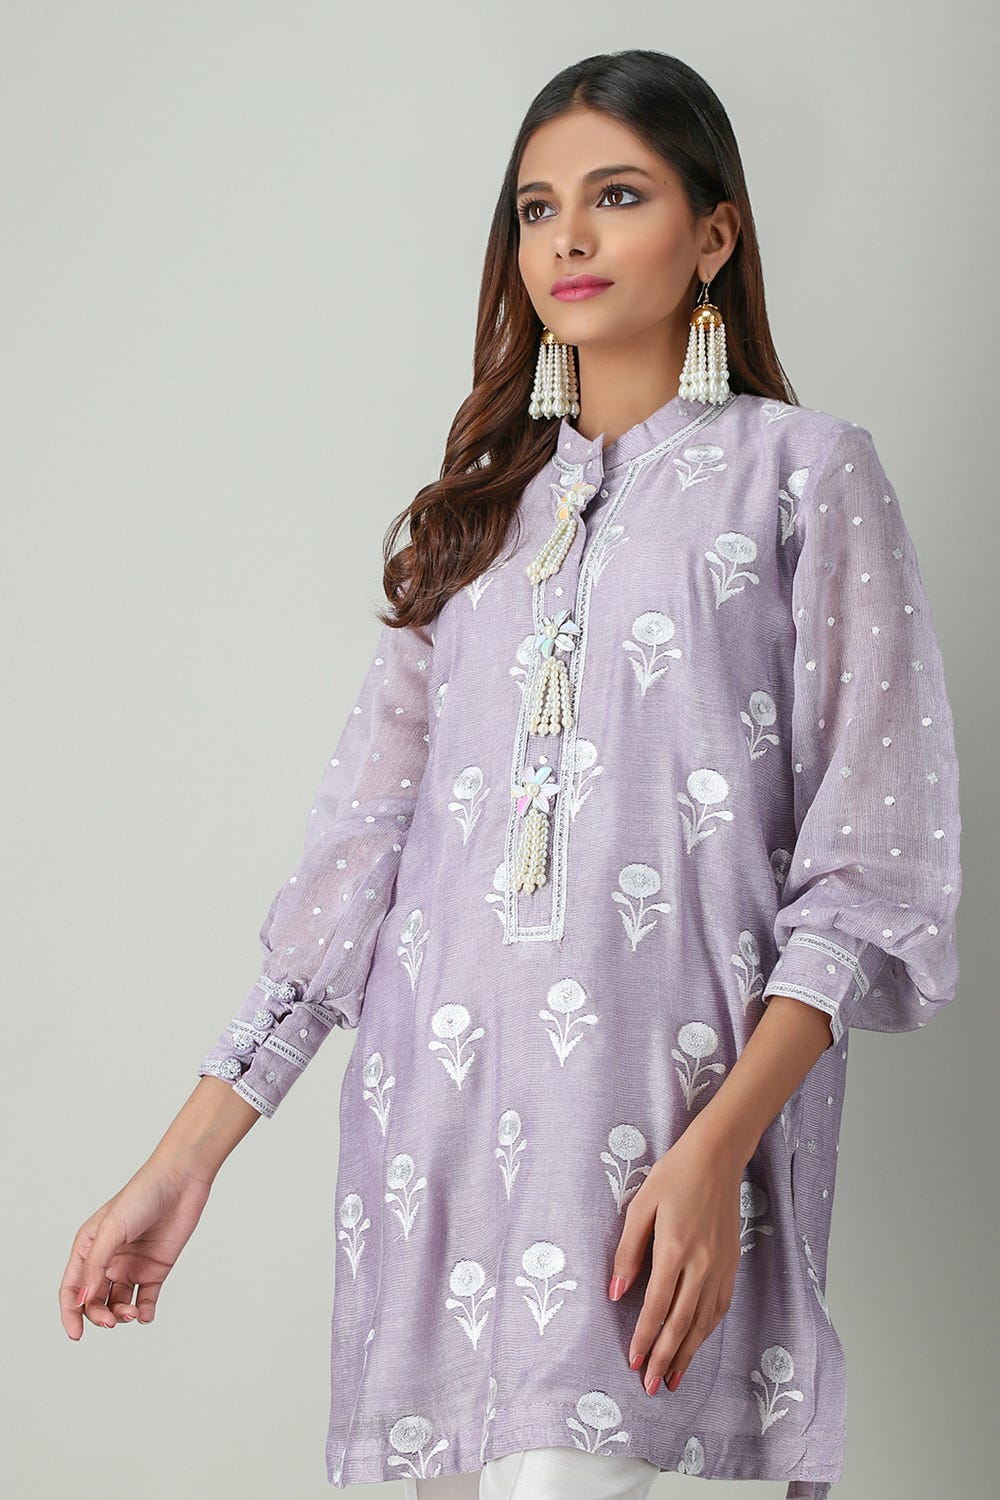 Ladies Saphire/ Al karam/ Khaadi Nishat Original printed Khader Kurta/ shirt 